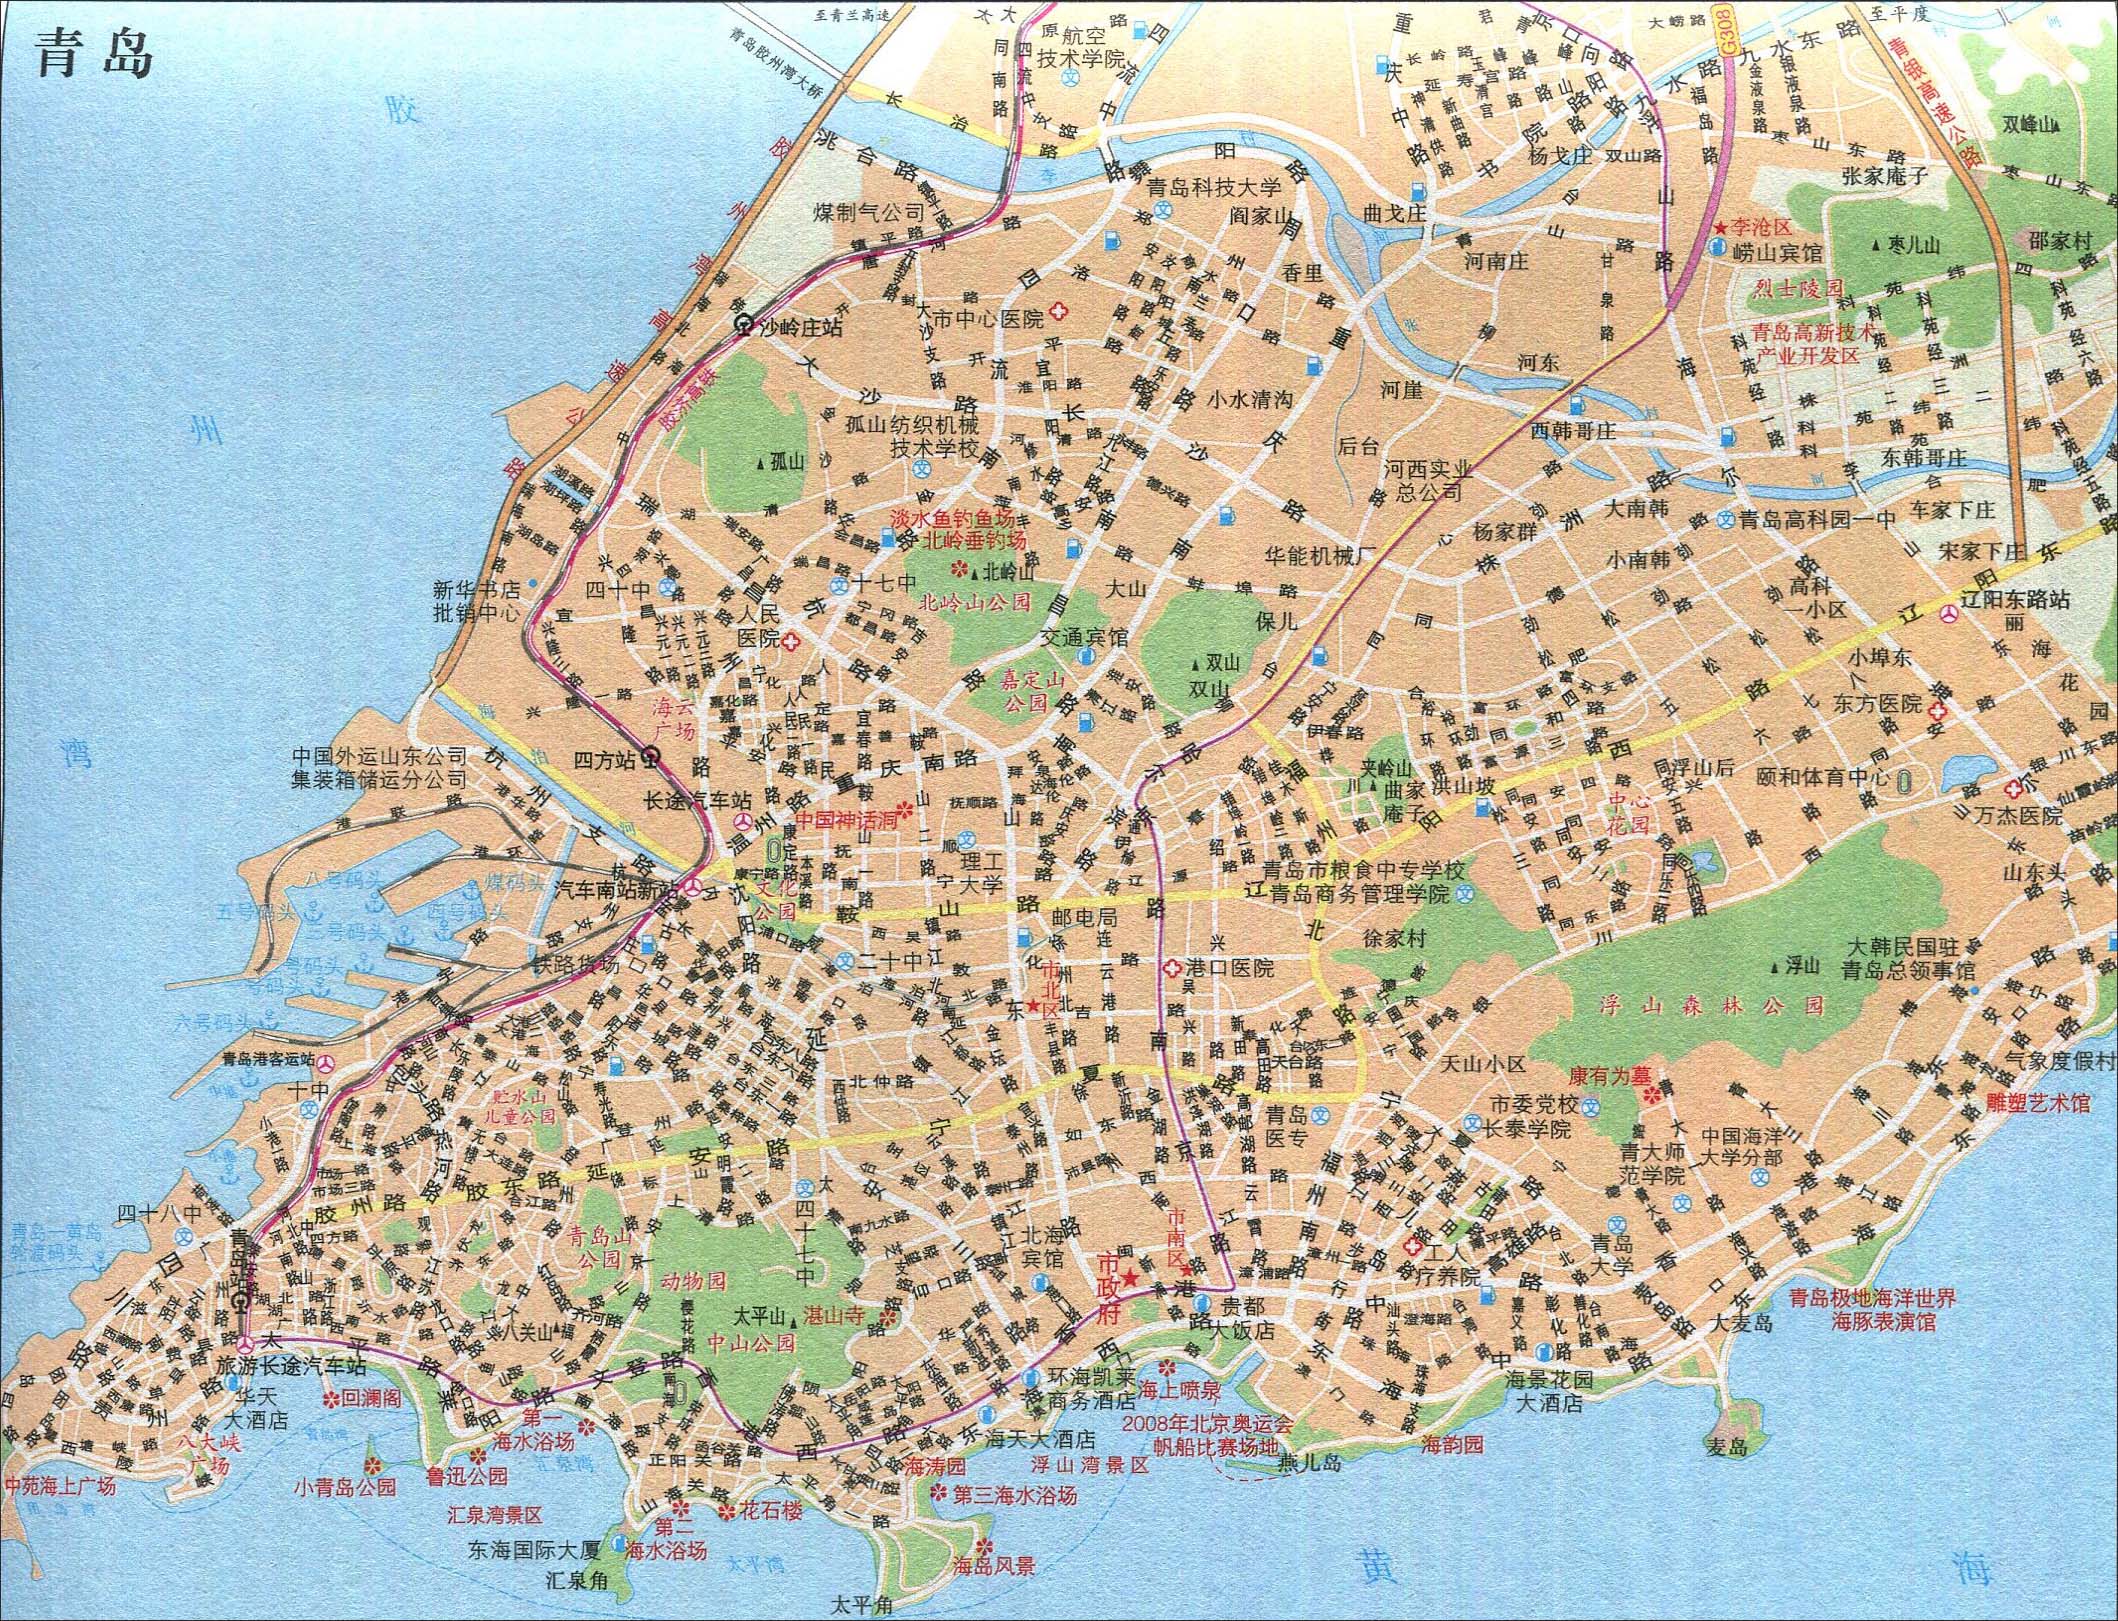 地图库 旅游地图 山东旅游 >> 青岛旅游交通地图  景点导航:世界旅游图片